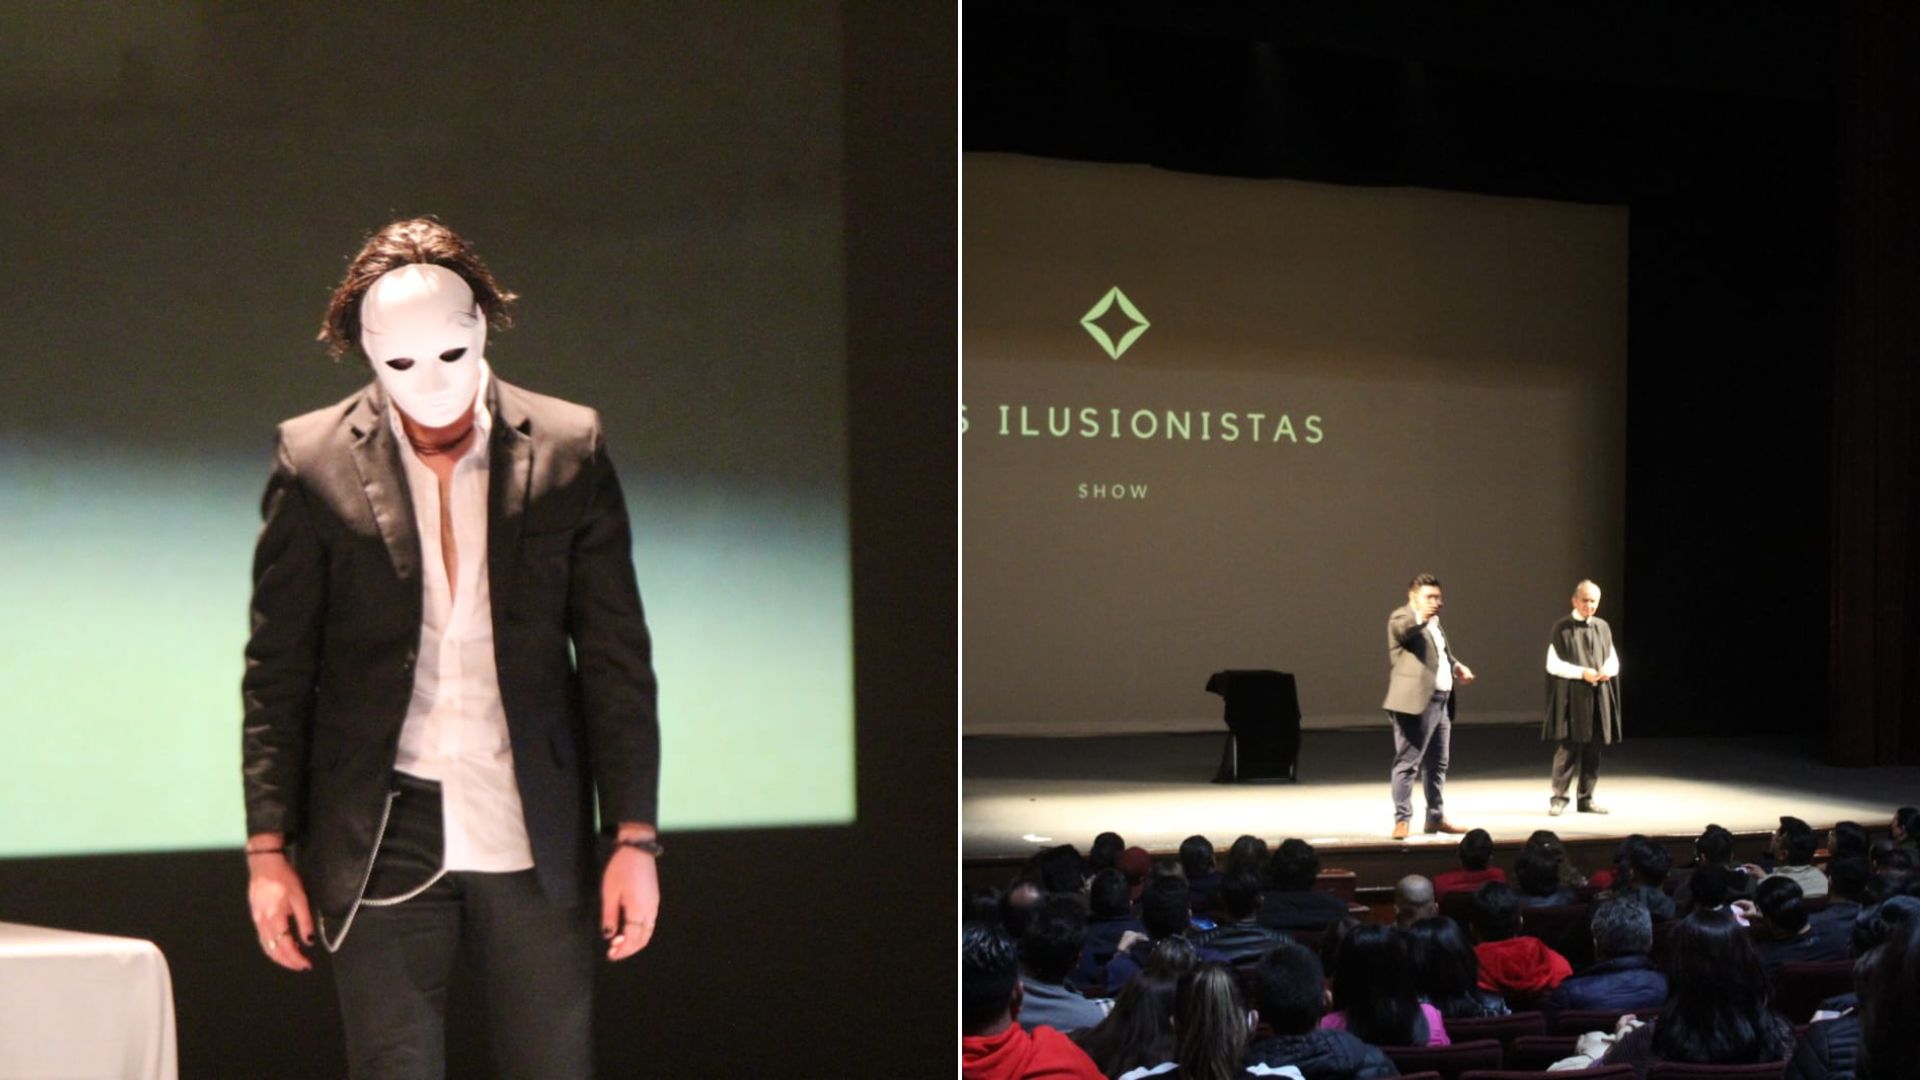 “Los ilusionistas show» Regresa al Teatro de la Paz